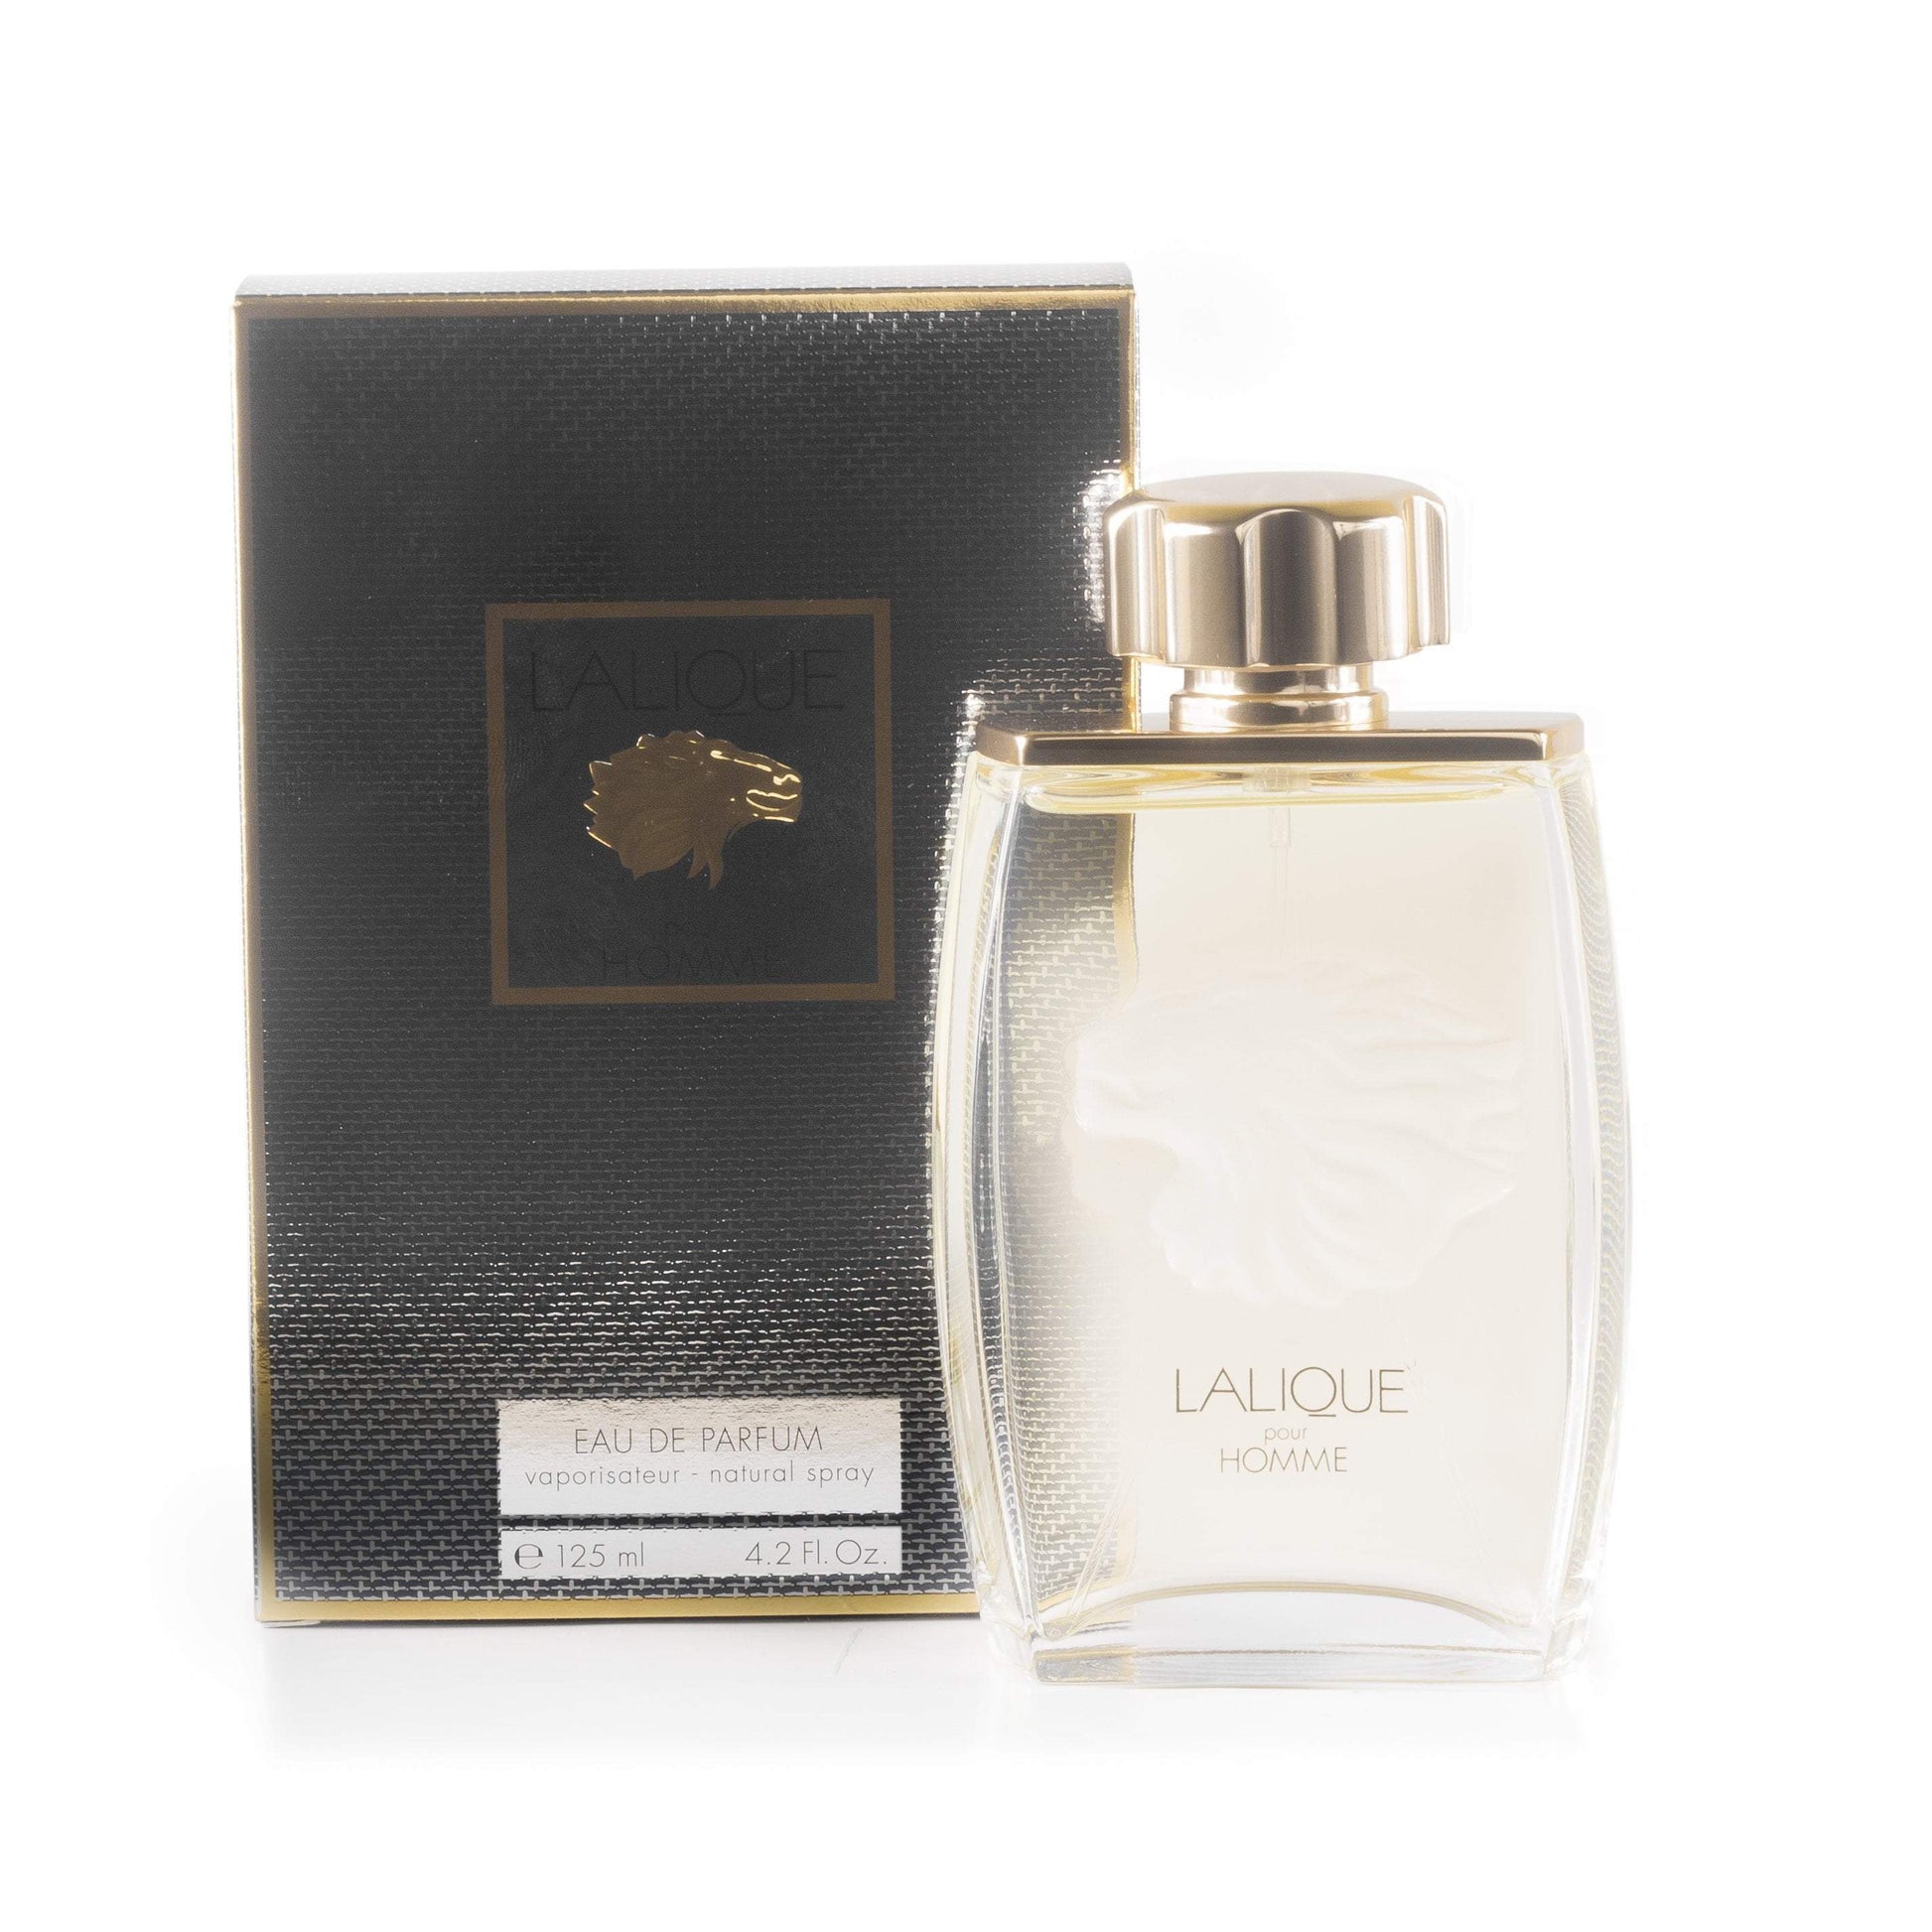 Pour Homme Eau de Parfum Spray for Men by Lalique, Product image 1